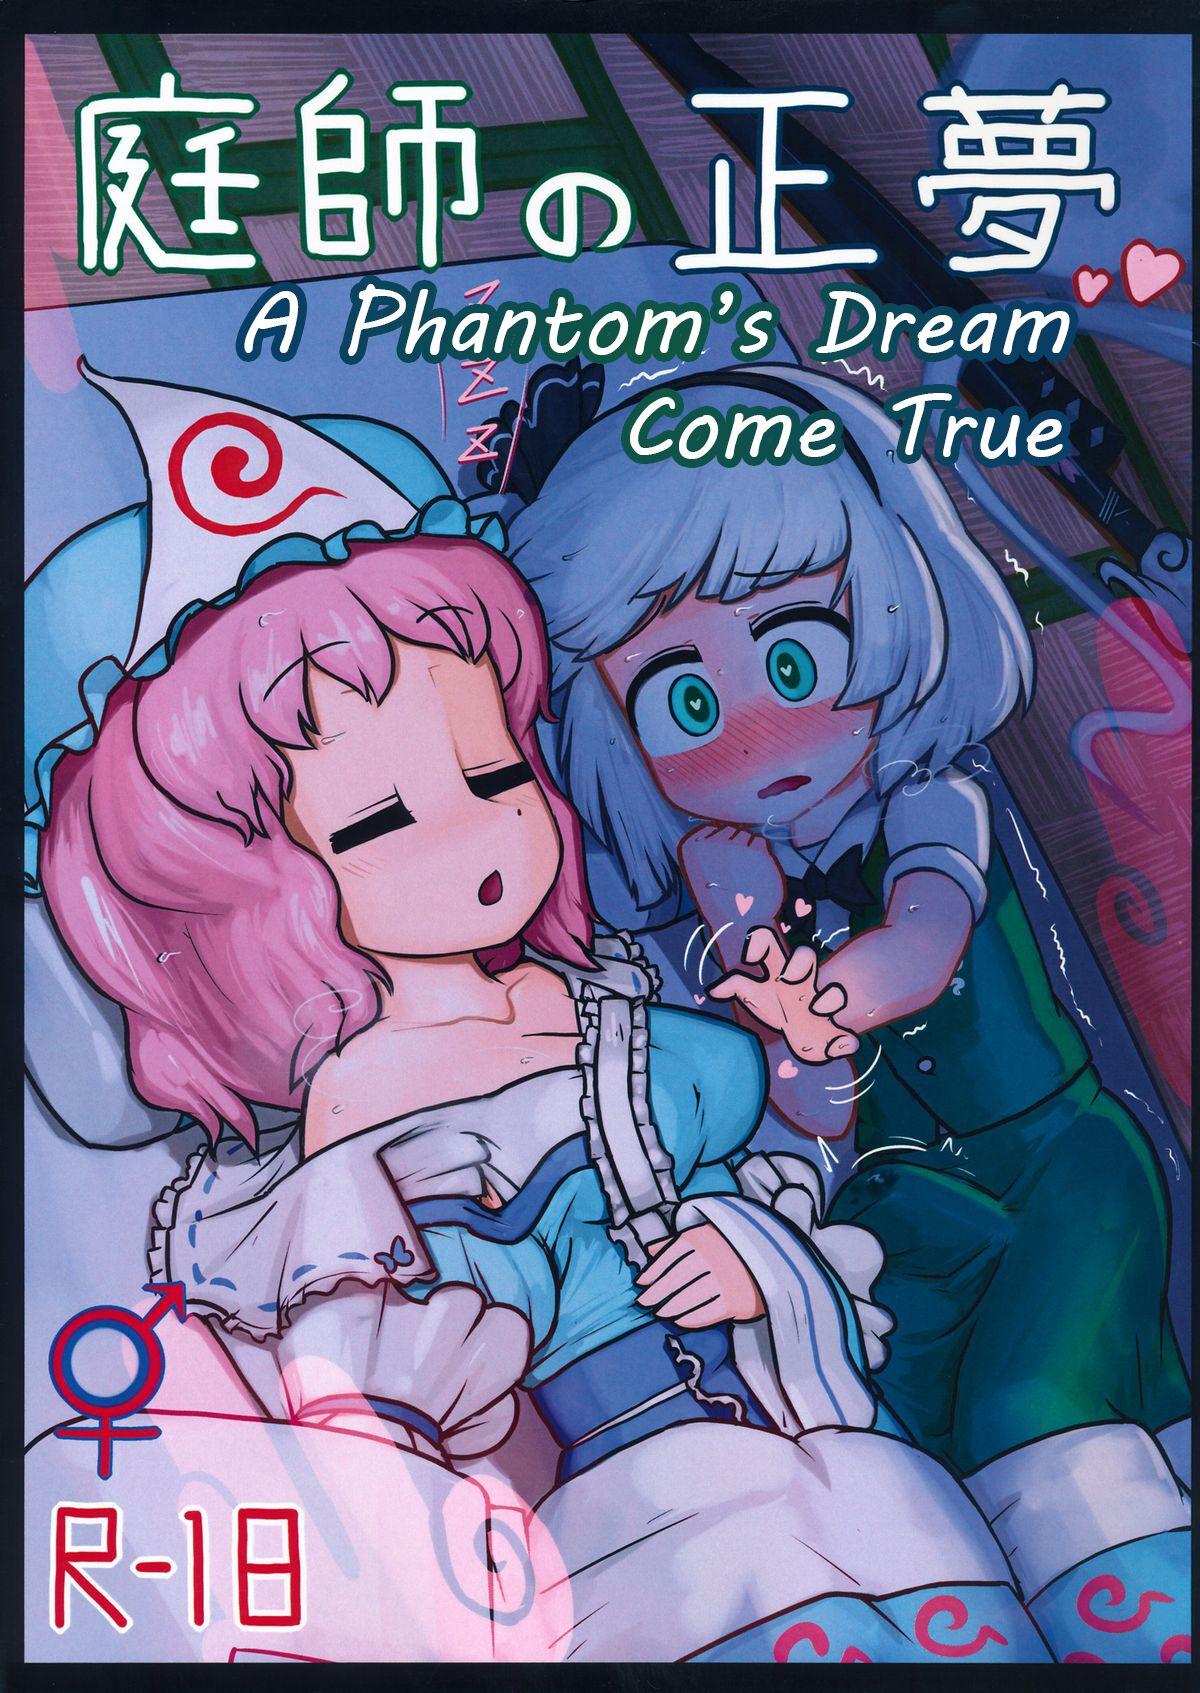 A Phantom's Dream Come True 0